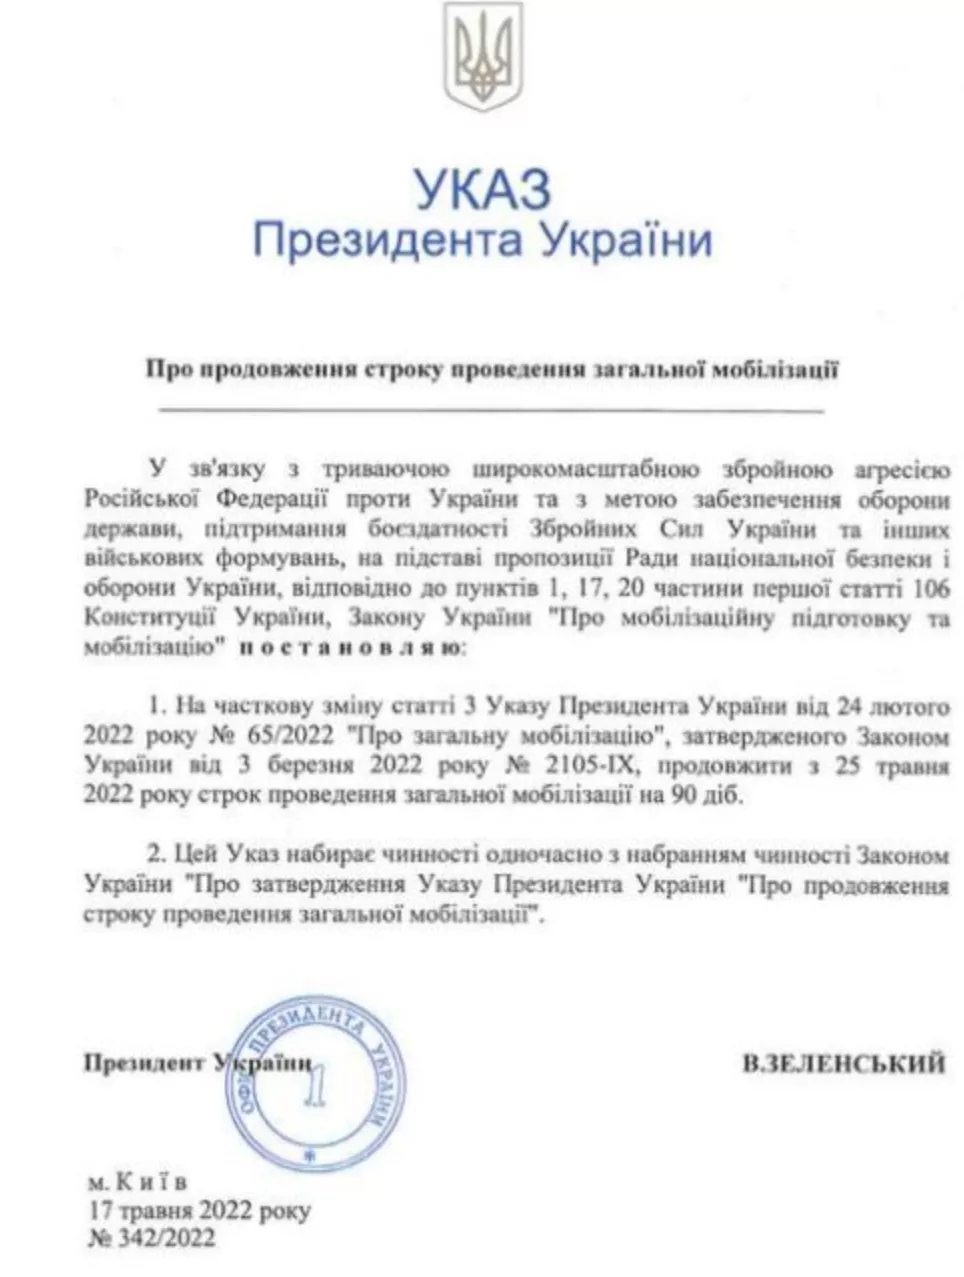 Указ Президента о продлении срока проведения общей мобилизации.